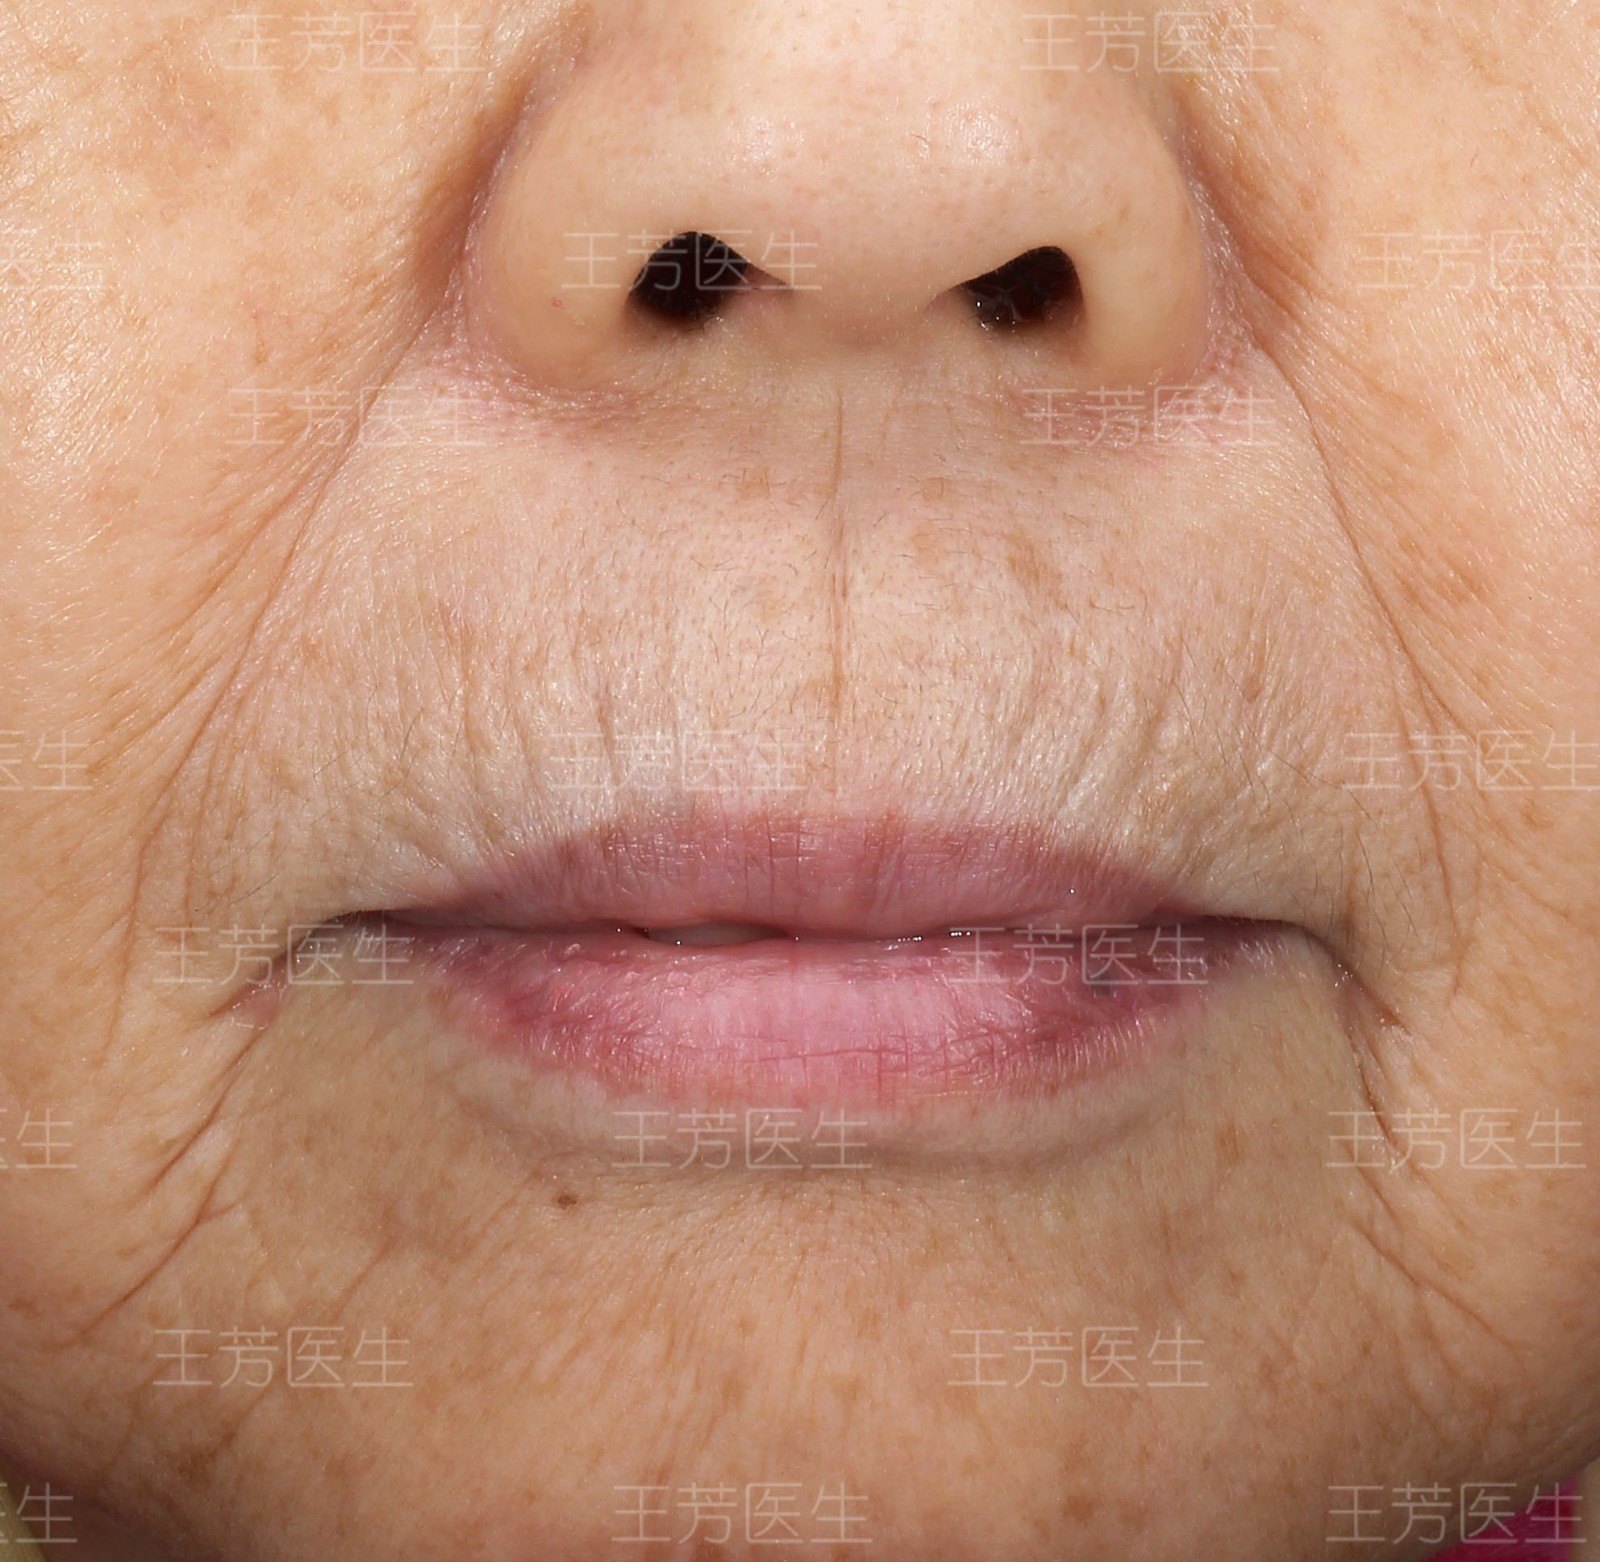 吹火纹或称"吸烟纹",是嘴唇周围的纵形皱纹,也是口周皮肤老化